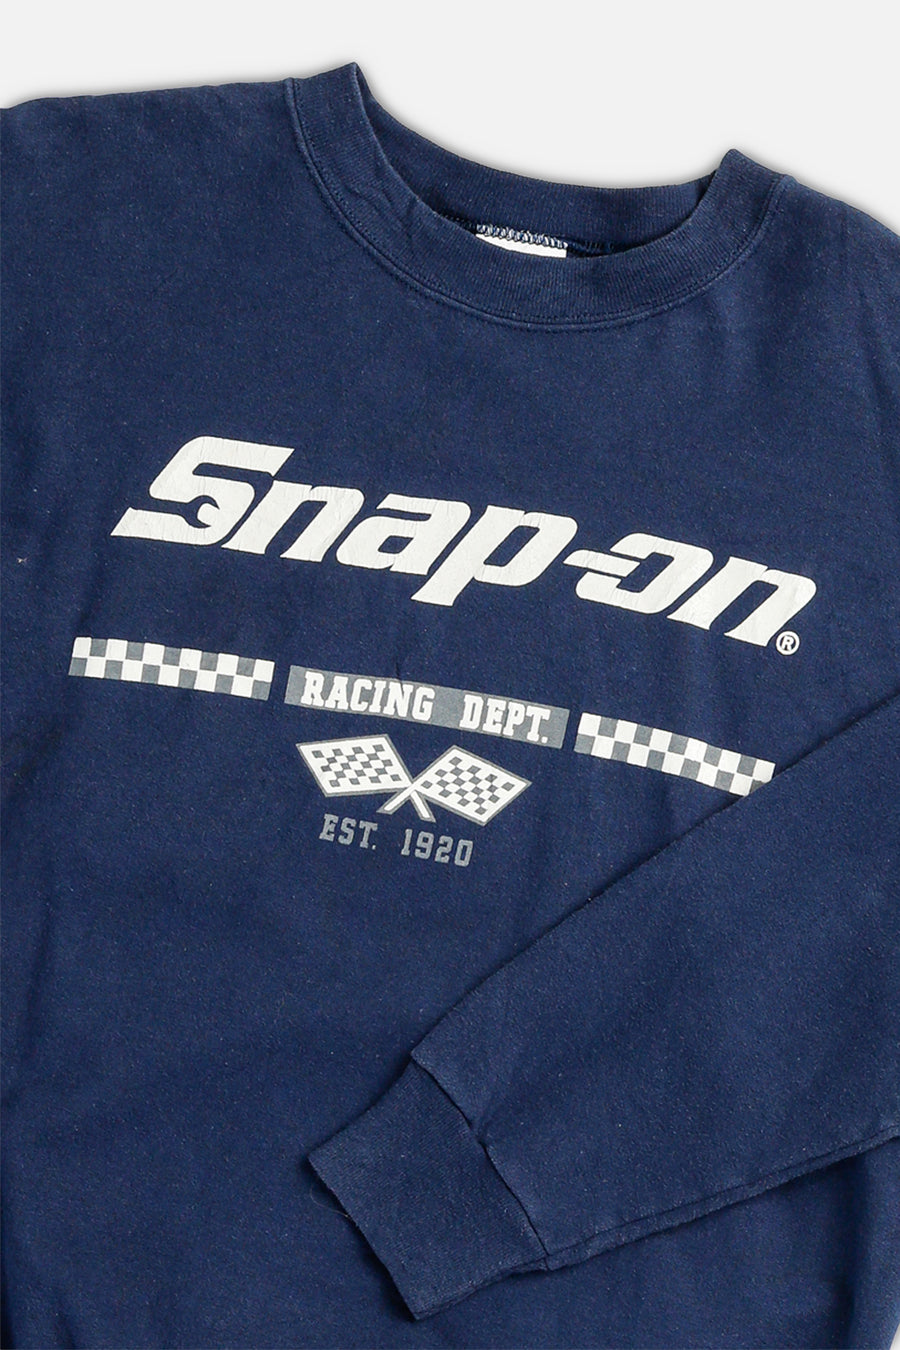 Vintage Racing Sweatshirt - M